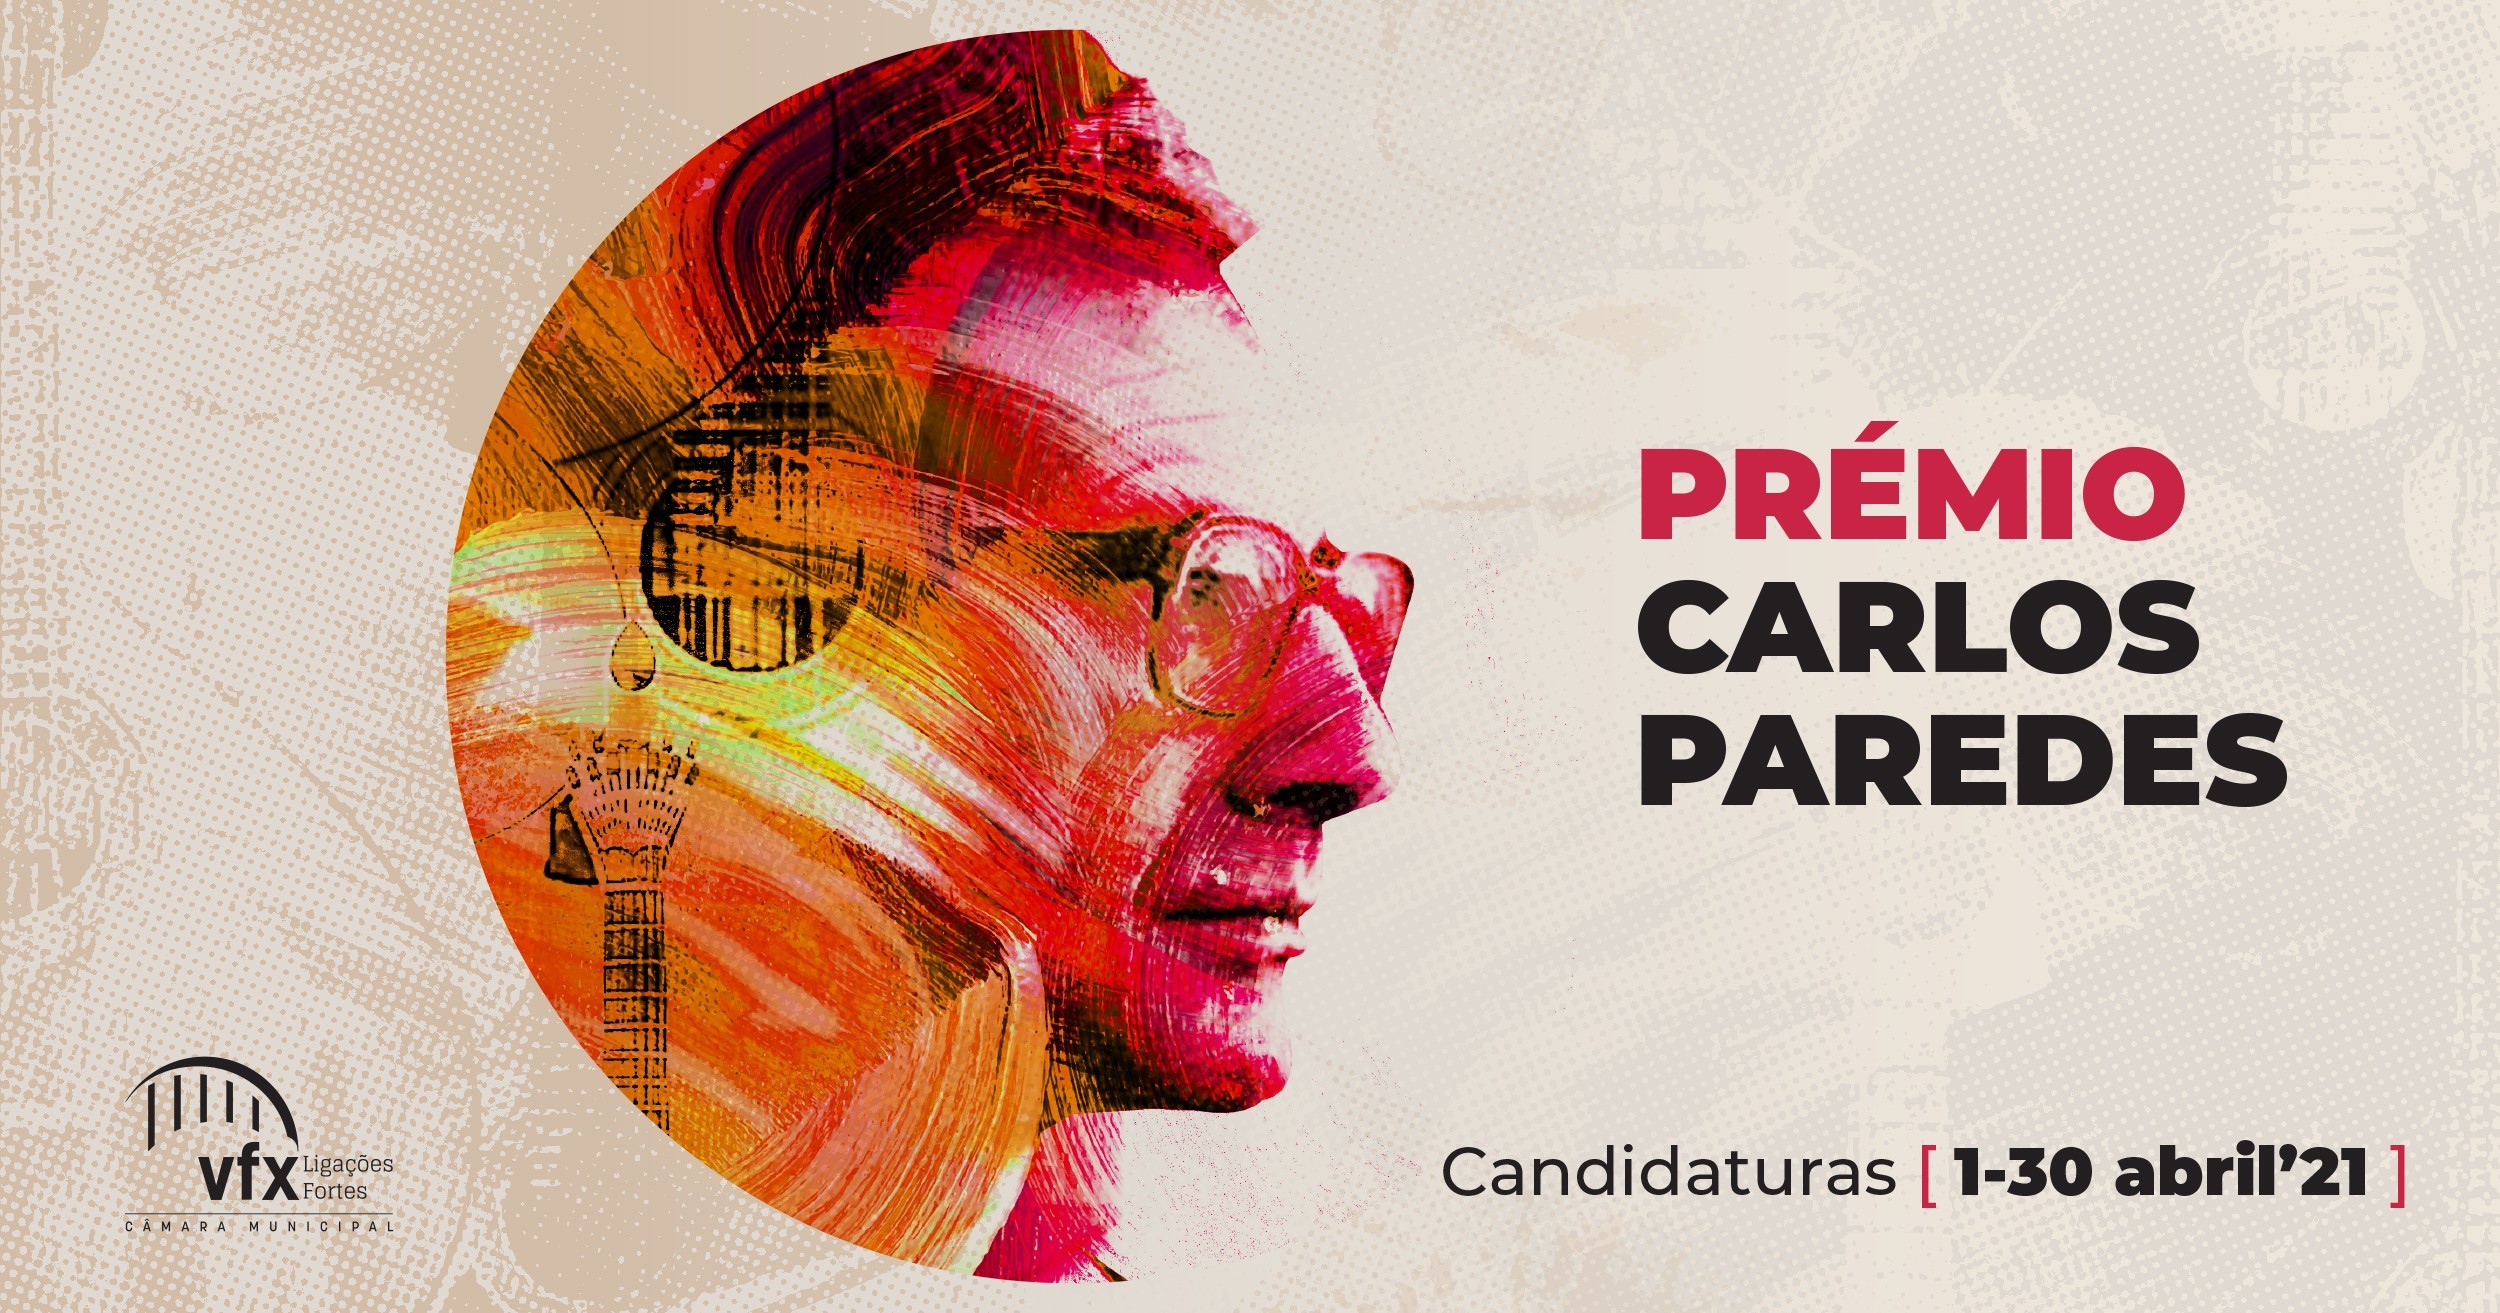 Prémio Municipal de música “Carlos Paredes” 2021 - candidaturas decorrem durante o mês de abril 